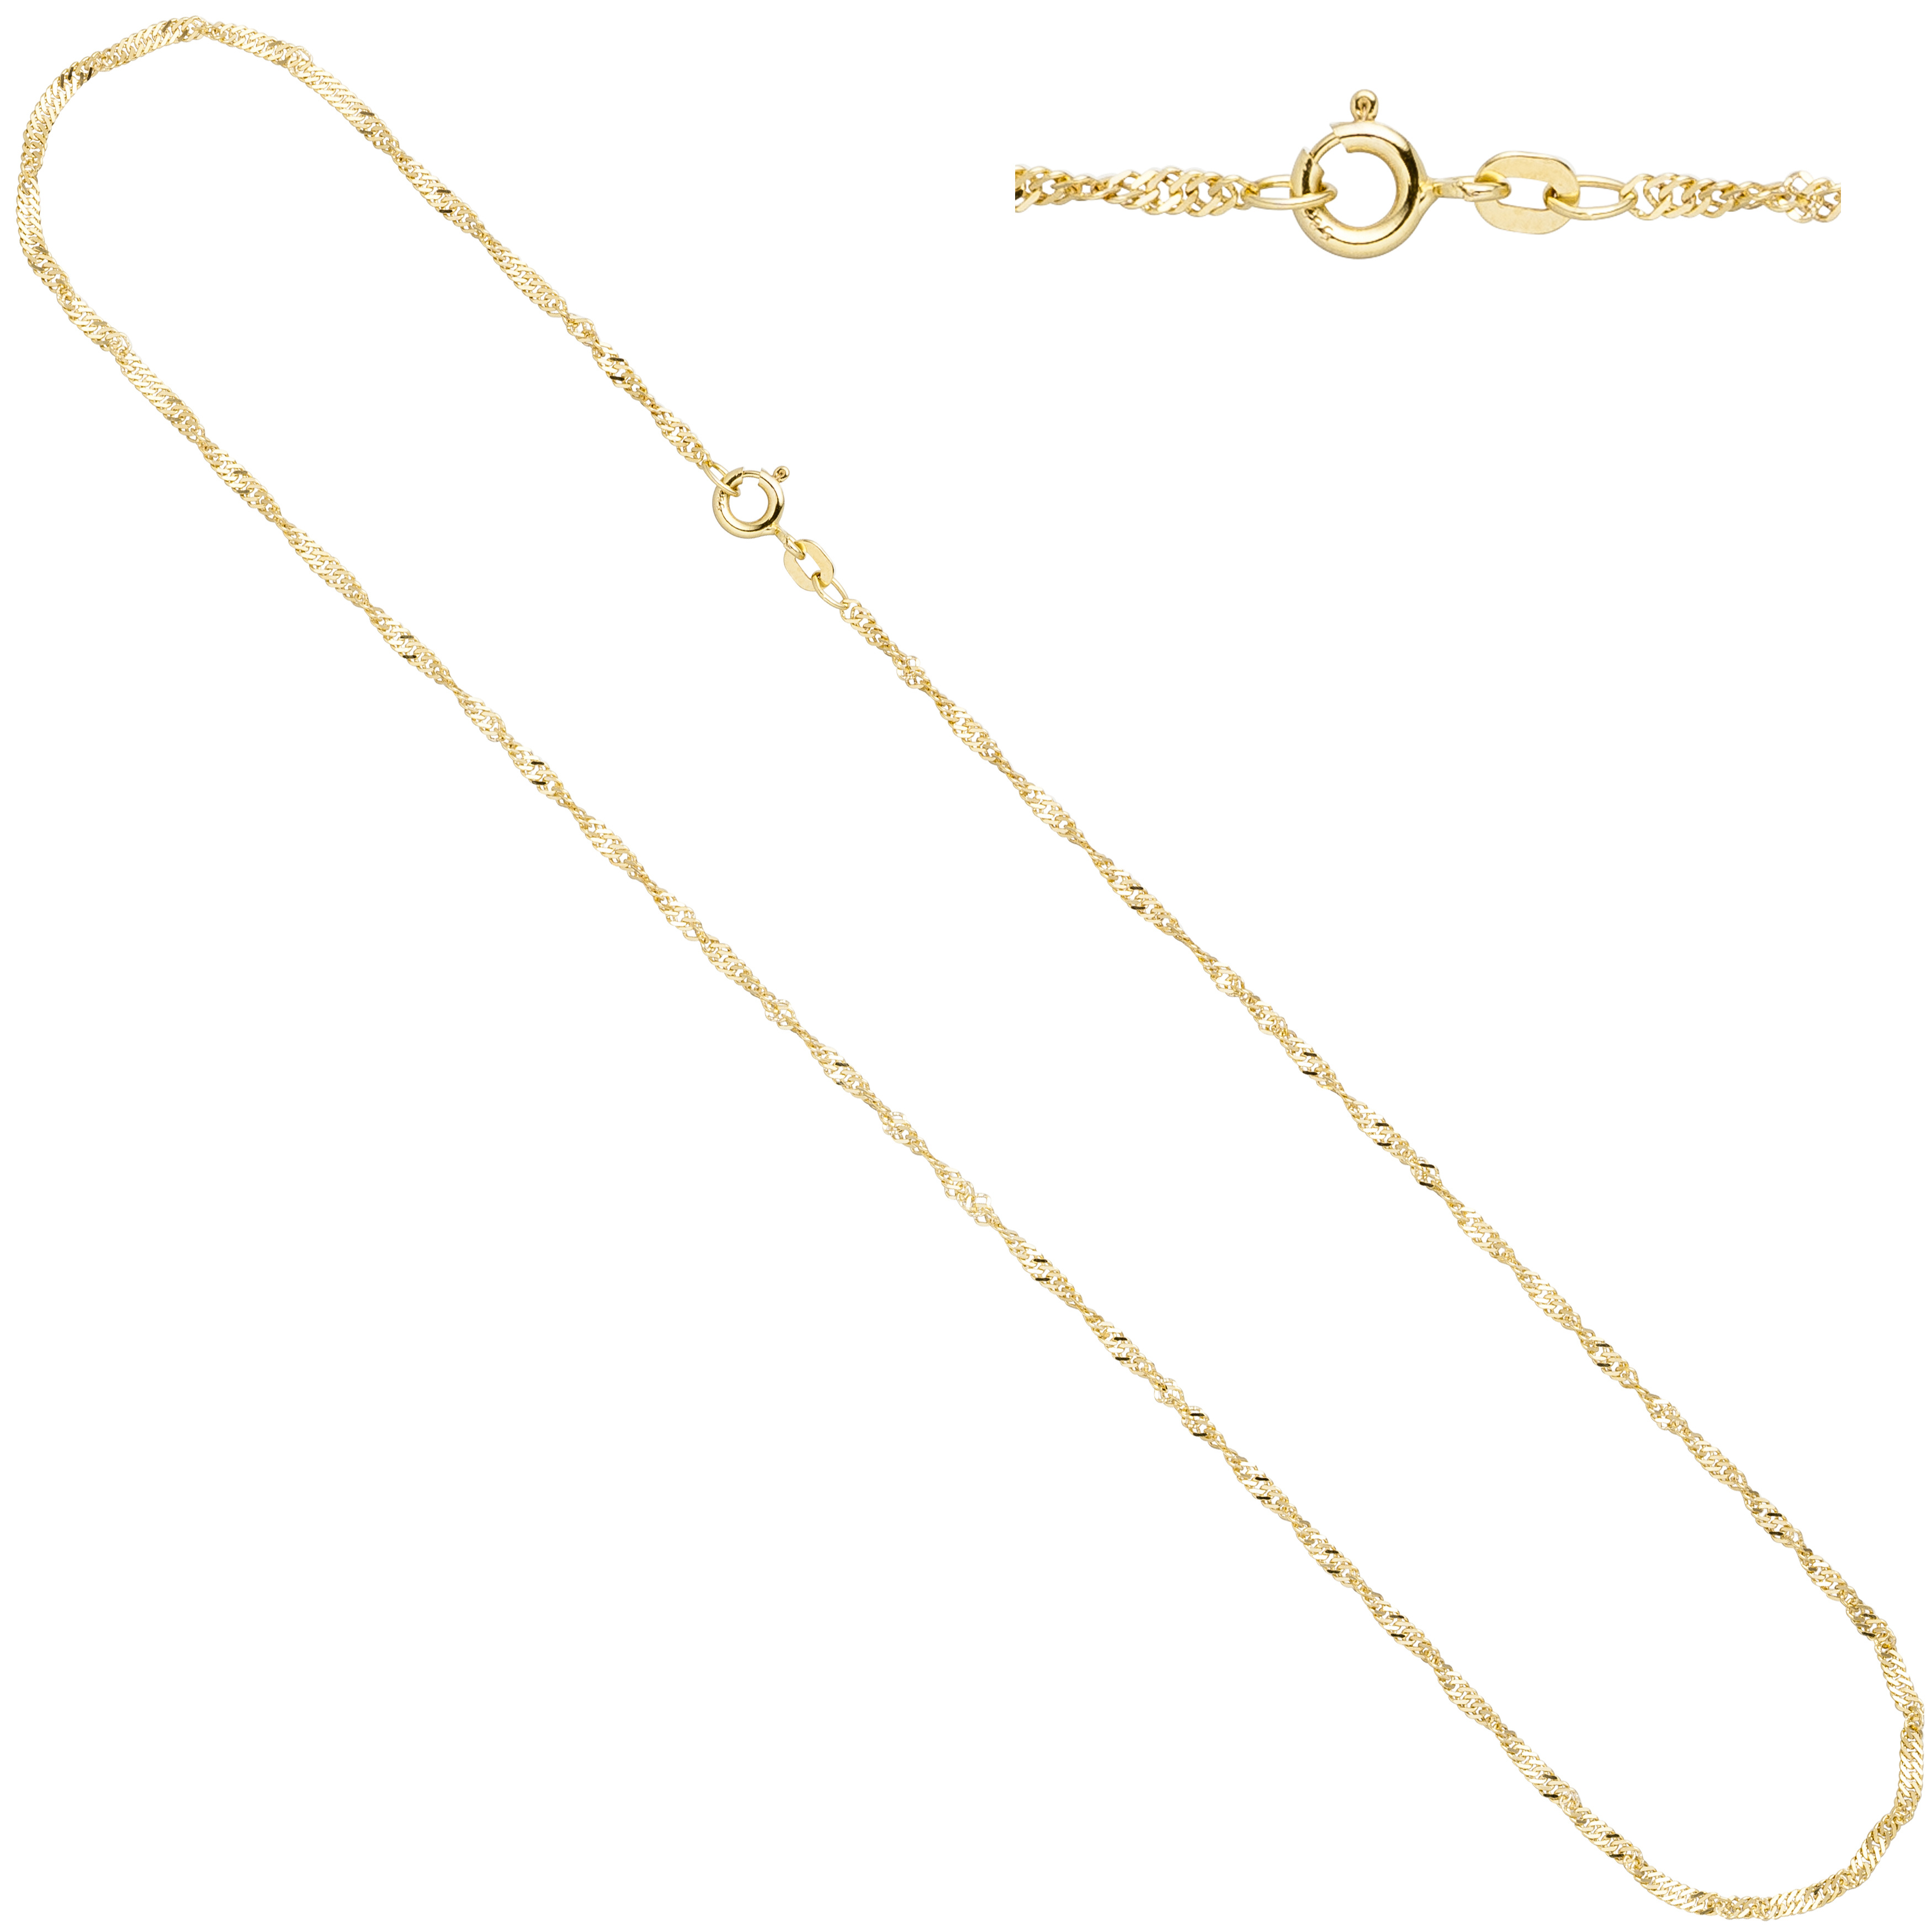 Singapurkette 333 Gelbgold 1,8 mm 45 cm Gold Kette Halskette Federring